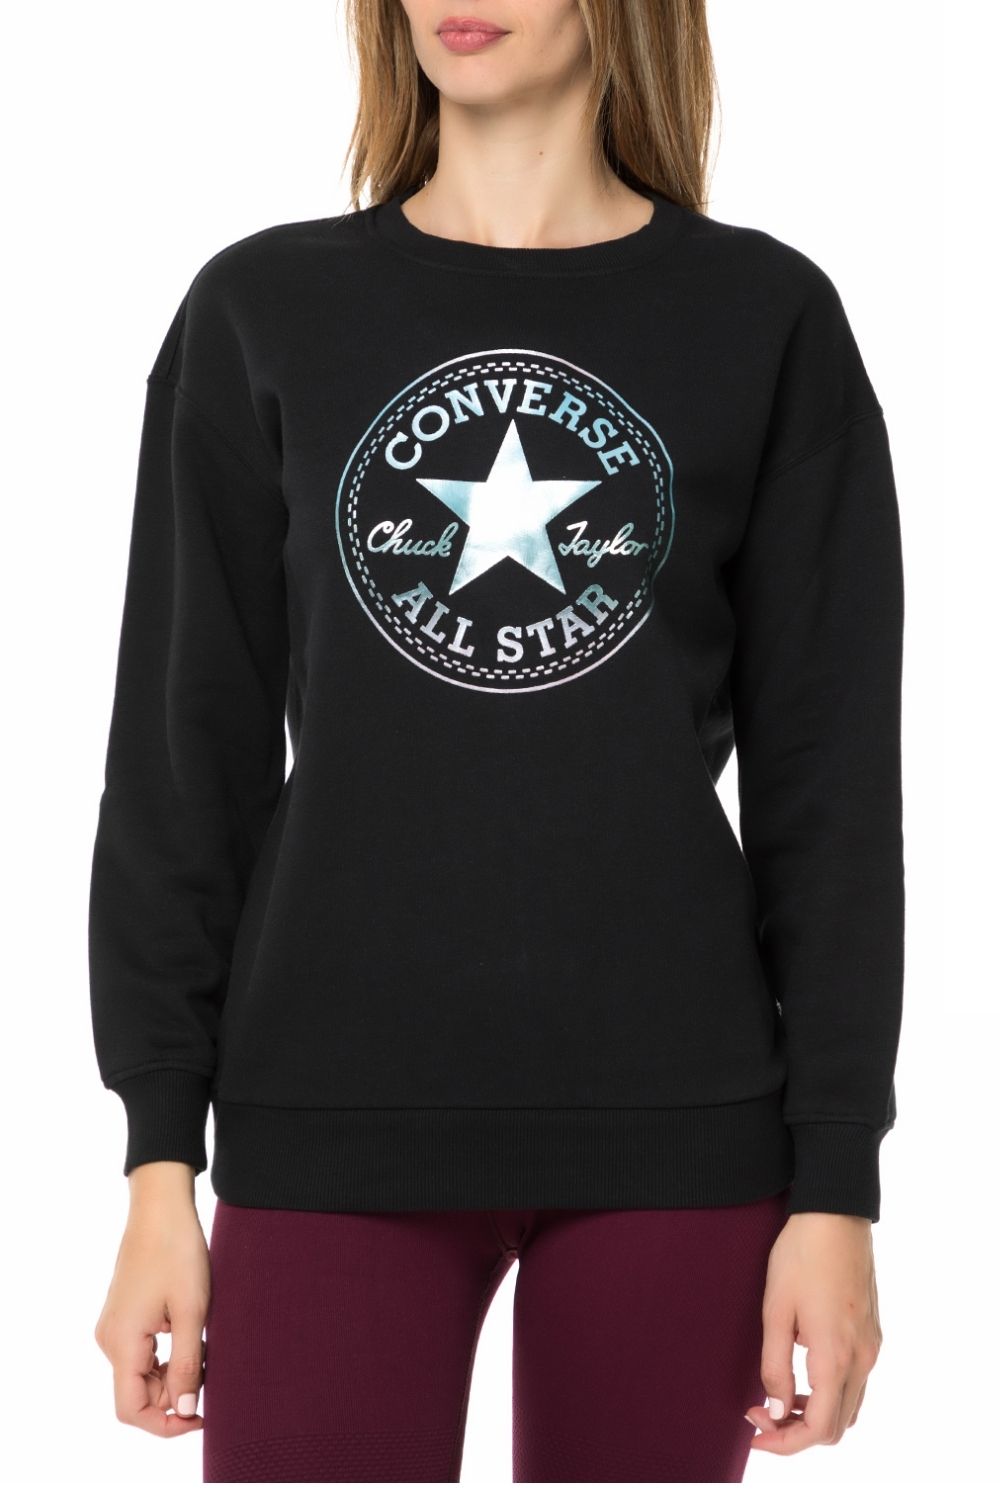 Γυναικεία/Ρούχα/Φούτερ/Μπλούζες CONVERSE - Γυναικεία φούτερ μπλούζα CONVERSE Shine Pack Graphic μαύρη